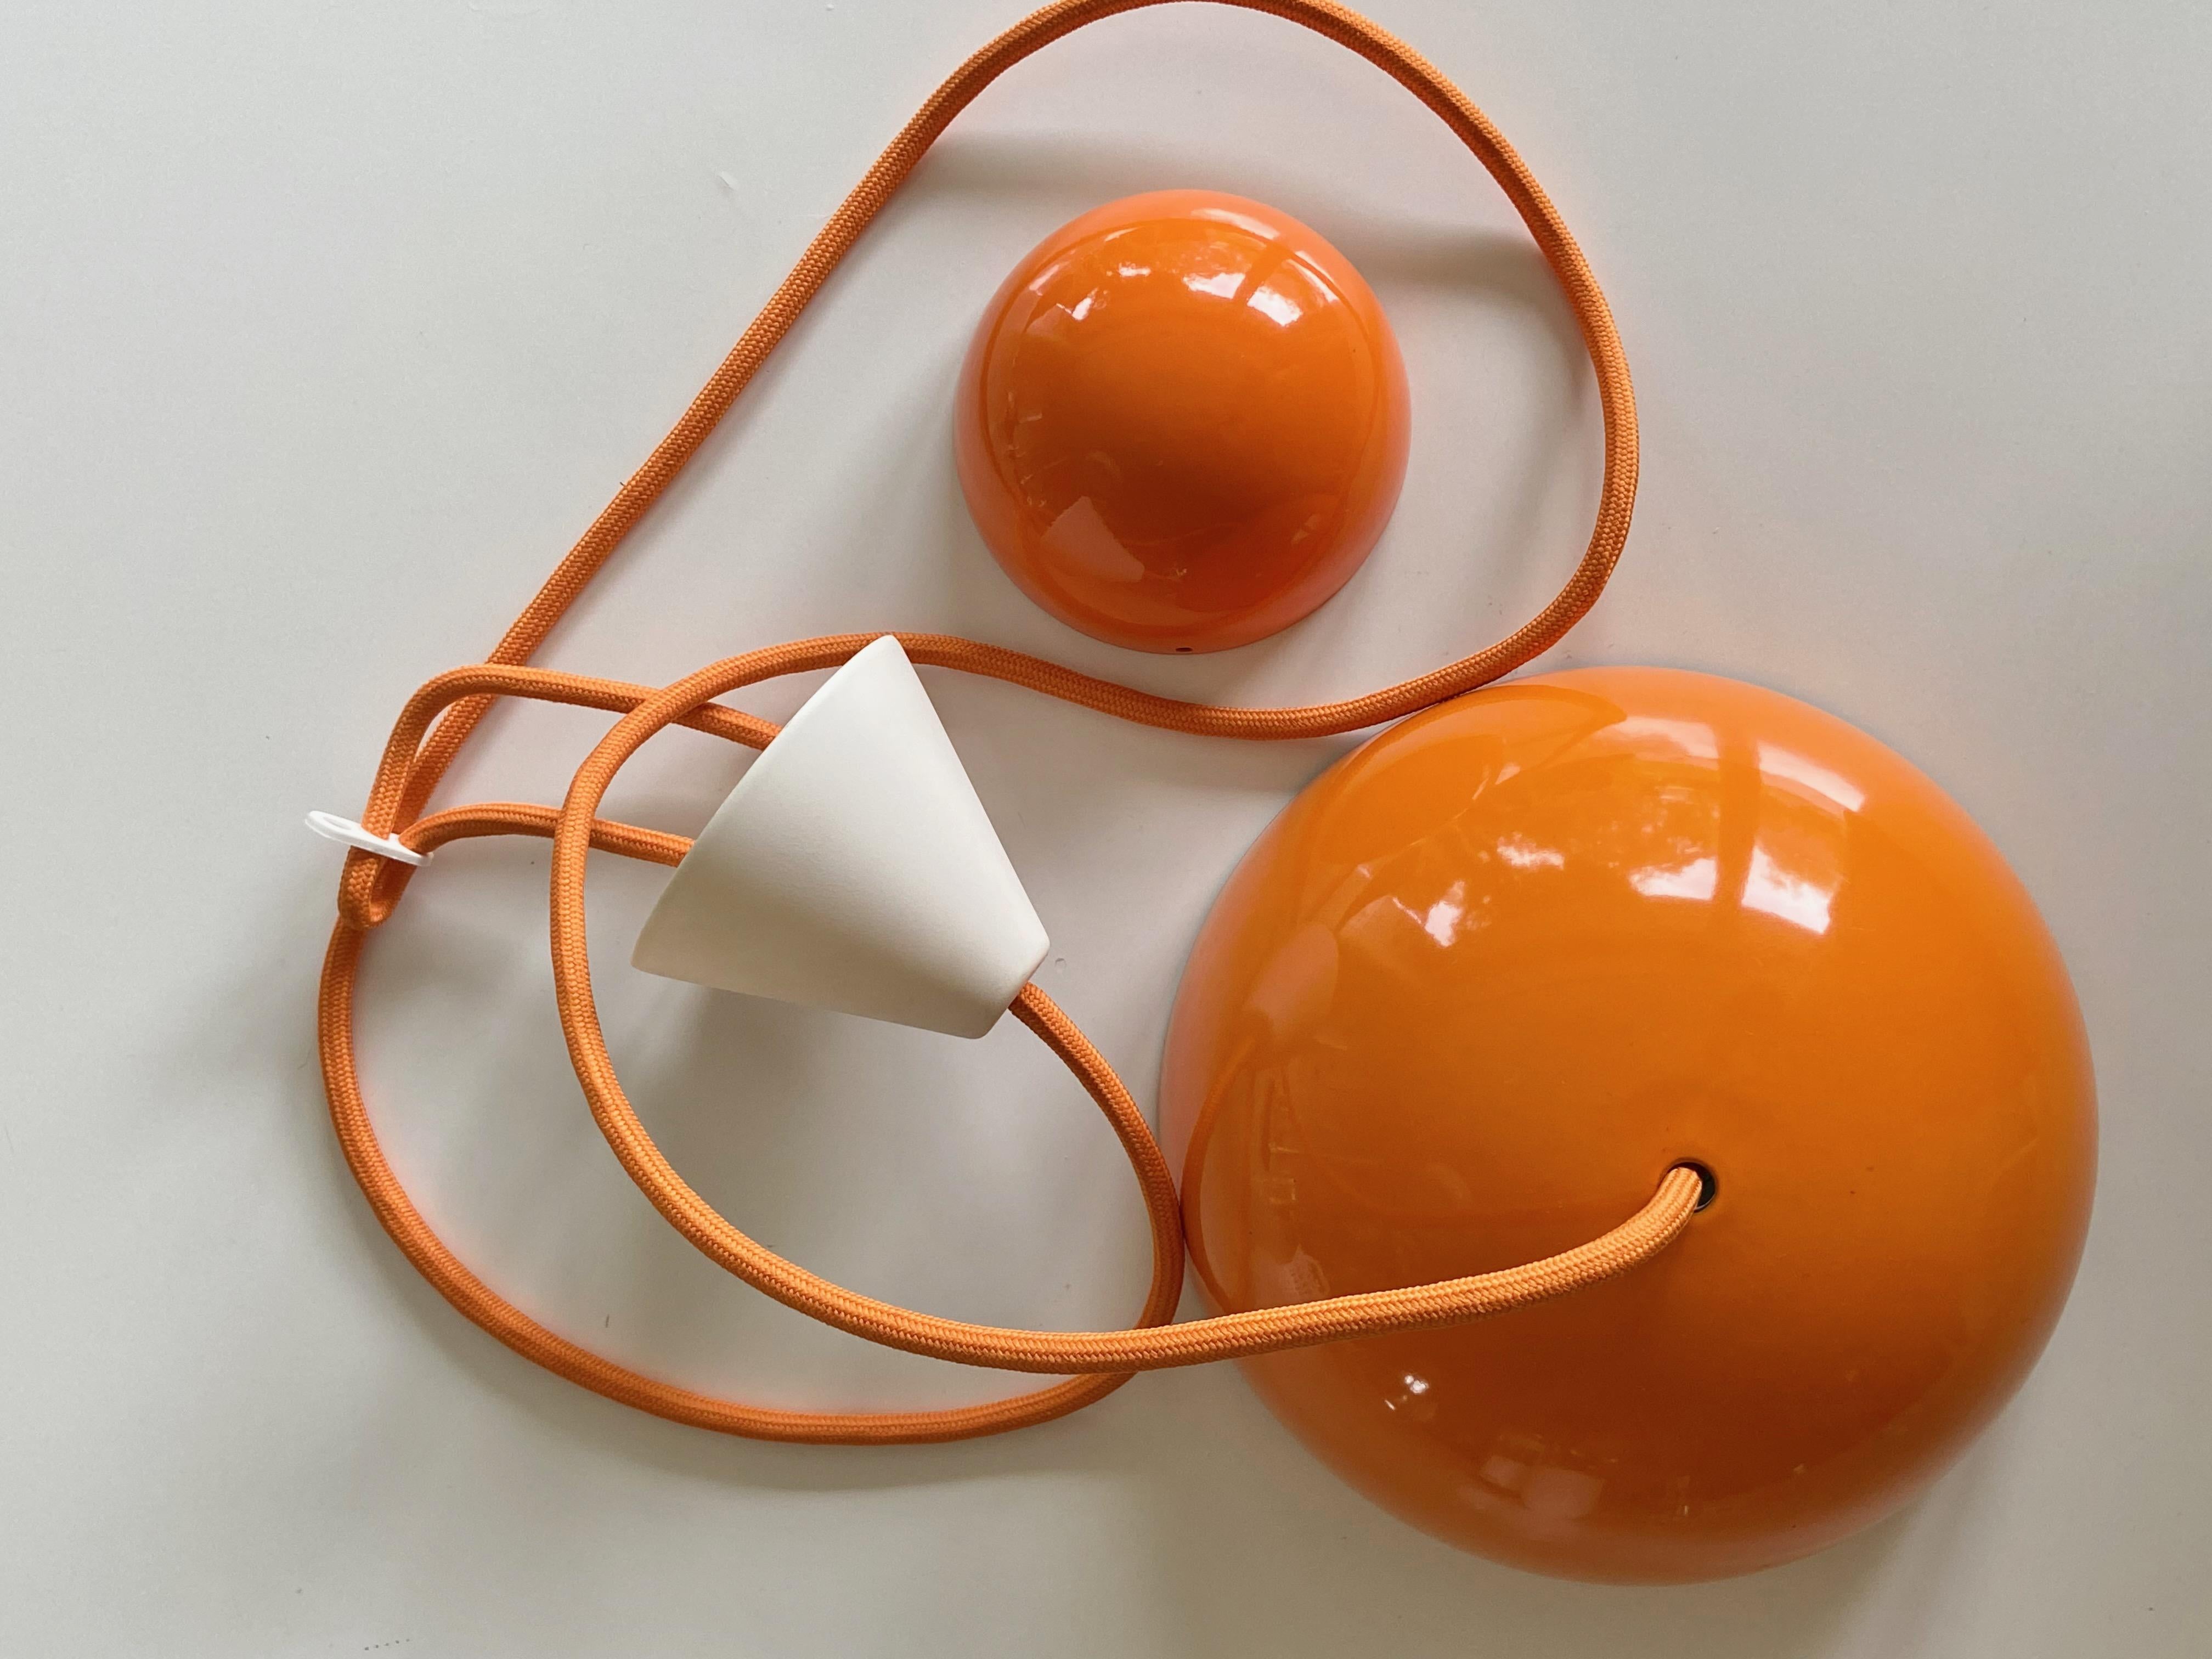 Jolie lampe pendante en forme de pot de fleur en émail orange, Design/One en 1968, produite par Louis Poulsen, fabriquée au Danemark. En métal émaillé, plus en production. La lampe est en bon état. Aucune pièce manquante, cordon électrique en tissu